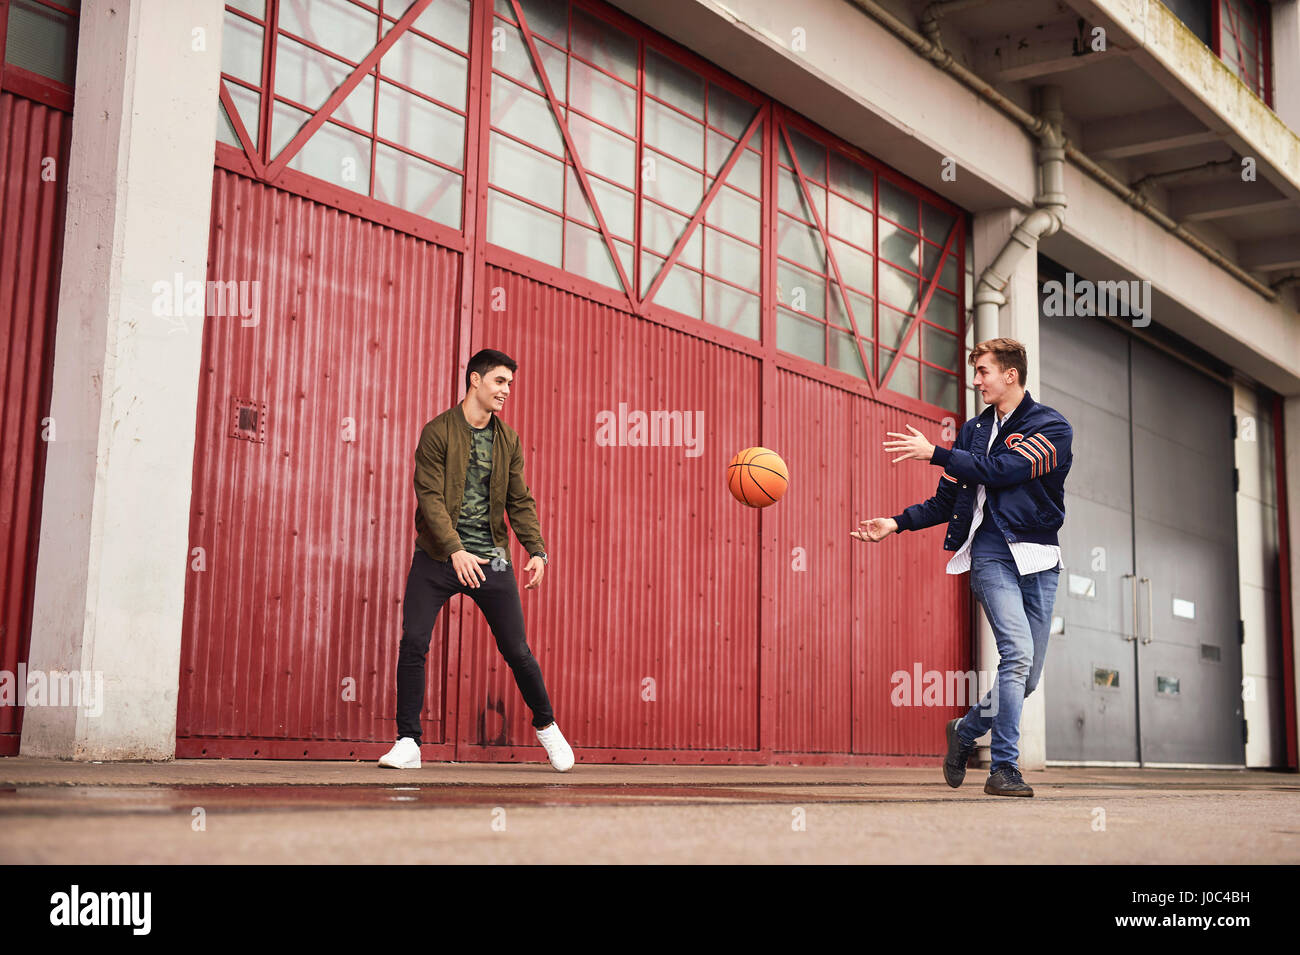 Zwei junge Männer spielen Basketball im Stadtgebiet, Bristol, UK Stockfoto